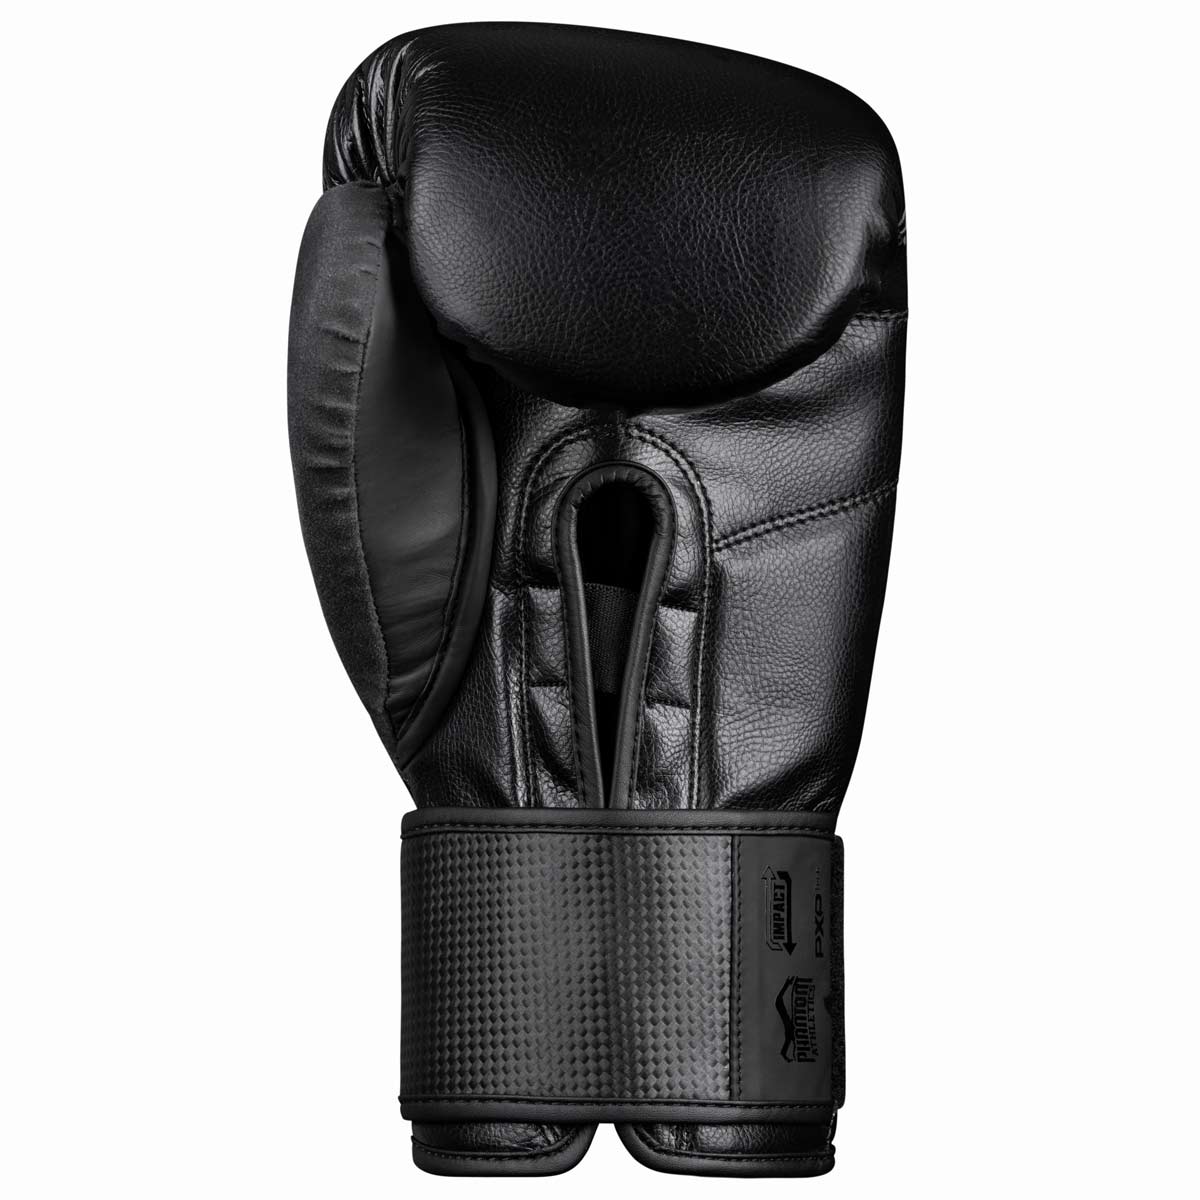 Die Phantom RIOT PRO Boxhandschuhe. Ideal für dein Kampfsport Training und Wettkämpfe. Perfekte Passform und überragende Qualität für Training und Sparring. Mit zusätzlichem Padding auf der Handinnenfläche zum Blocken von Schlägen und Kicks.